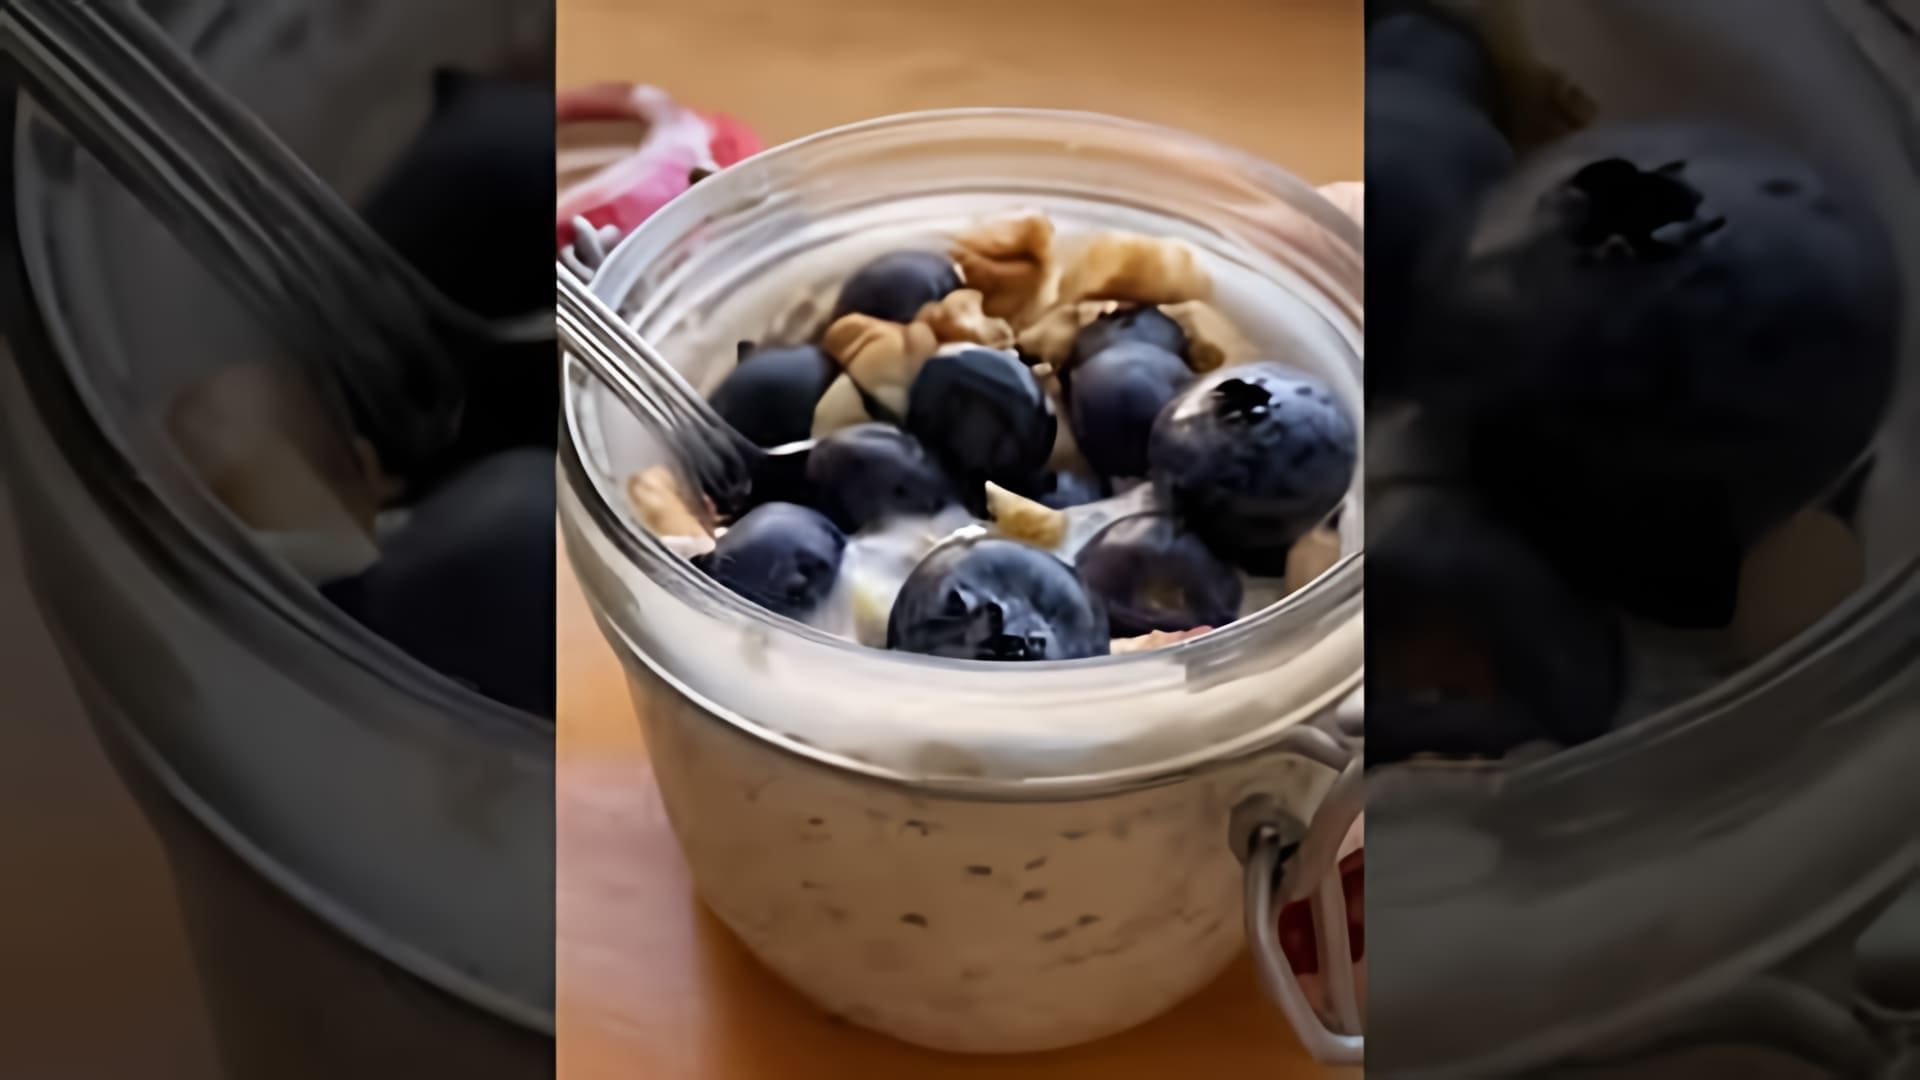 Видео рассказывает о приготовлении овсянки на завтрак без готовки